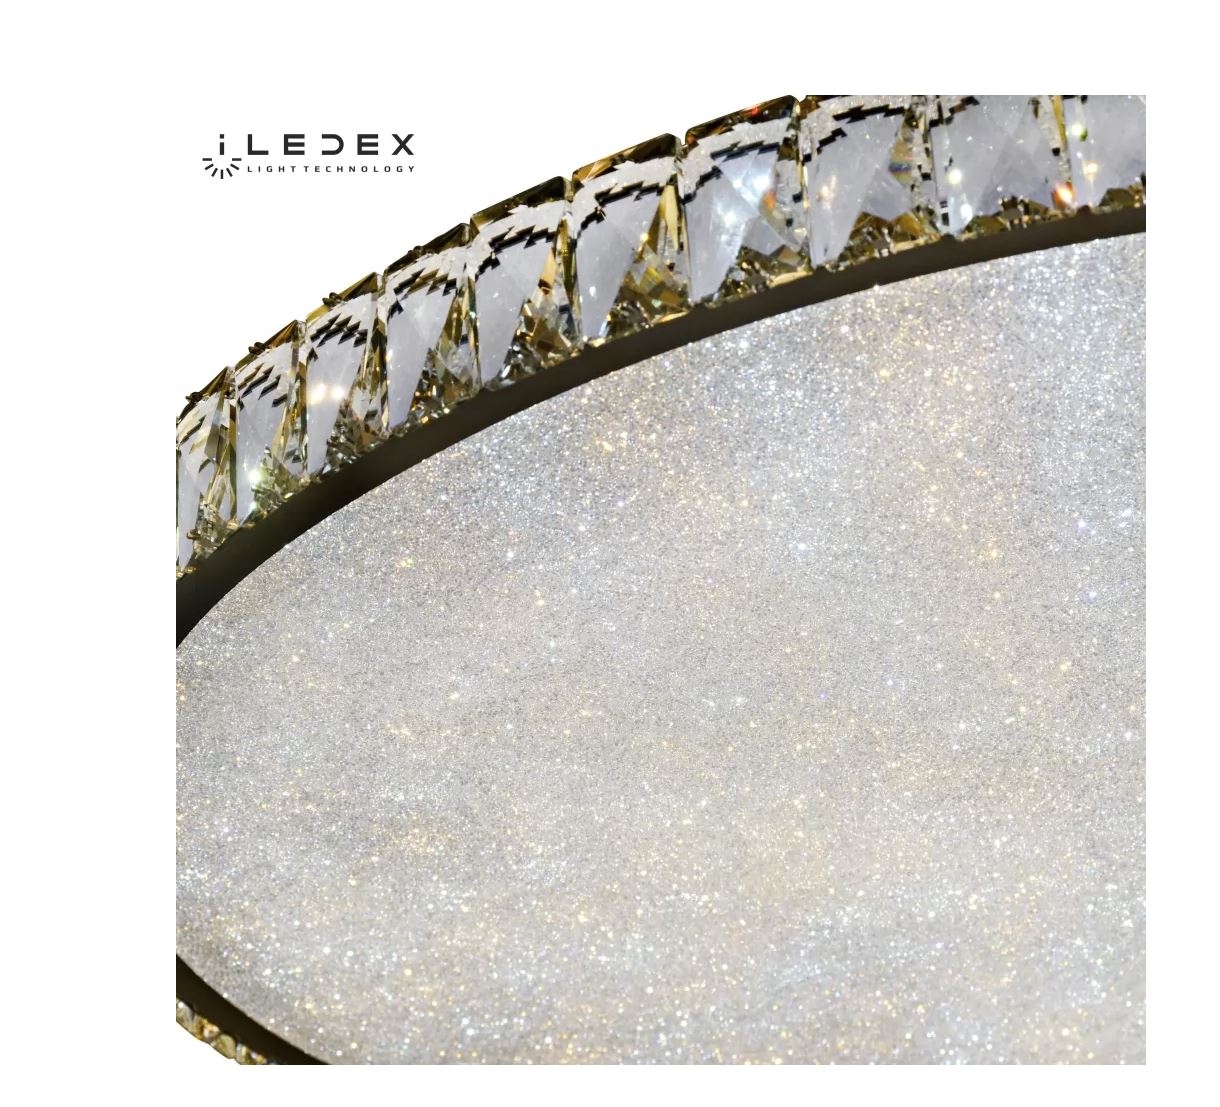 Потолочный светильник iLedex Crystal 16336C/800 CR